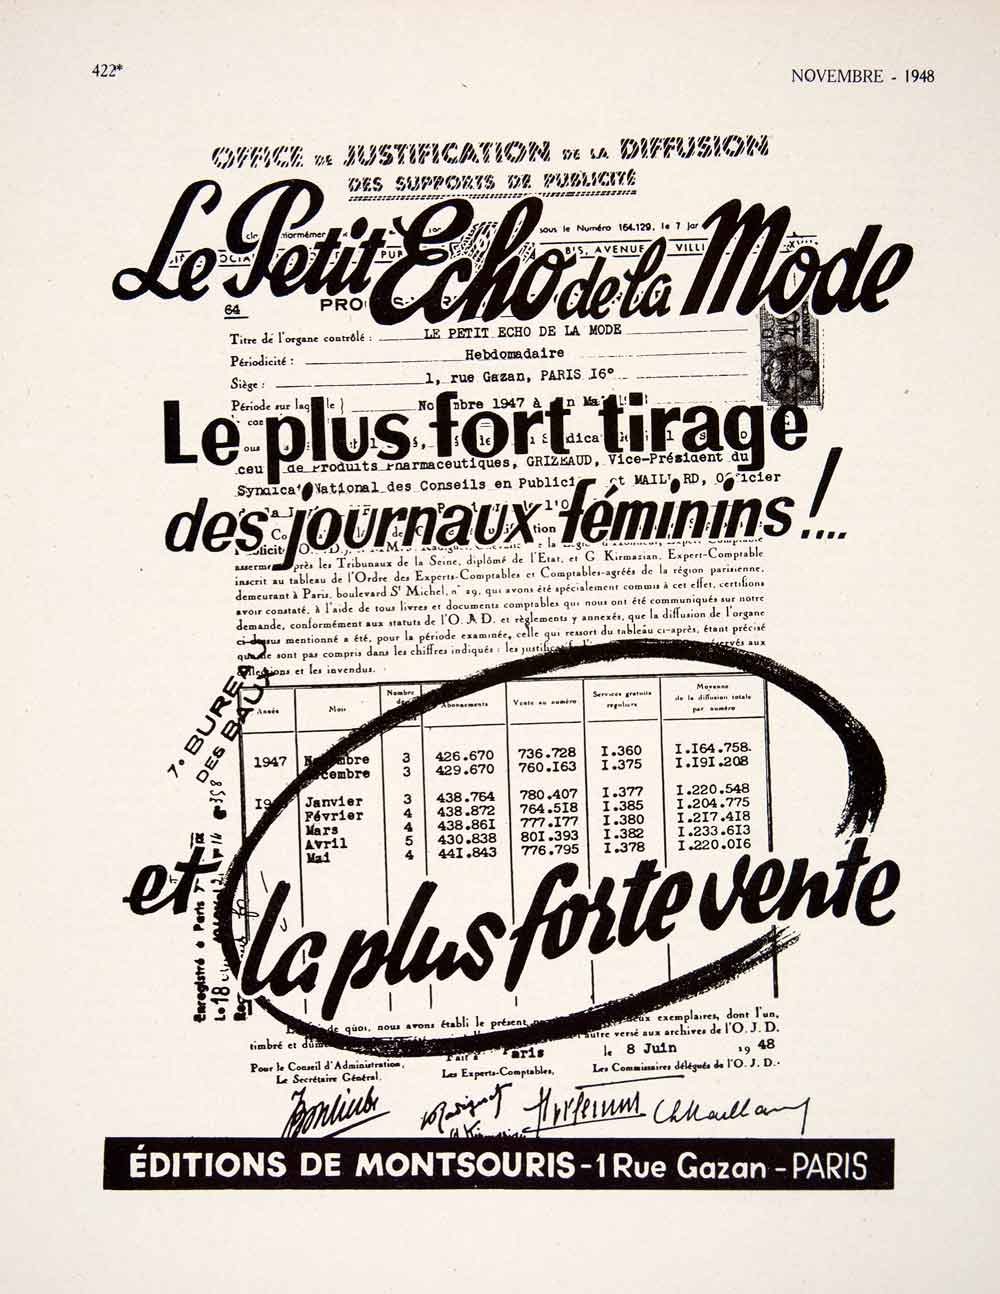 1948 Ad 1 Rue Gazon Paris Petit Echo Mode Fashion Newspaper Montsouris VEN8